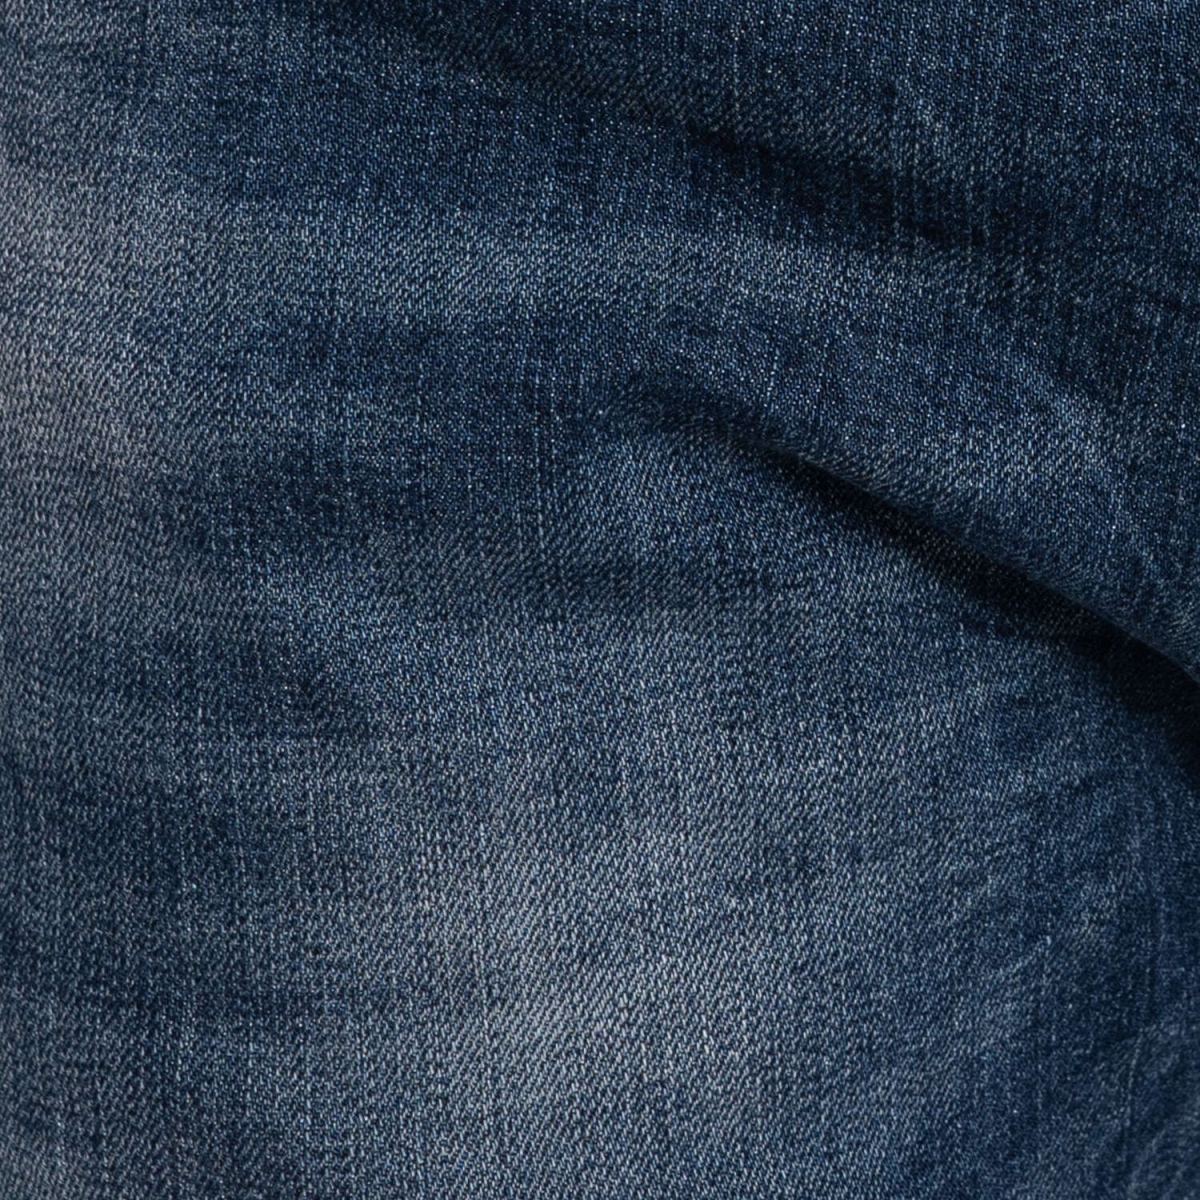 vêtements Jeans homme LPHM1075 BLU Cafedelmar Shop